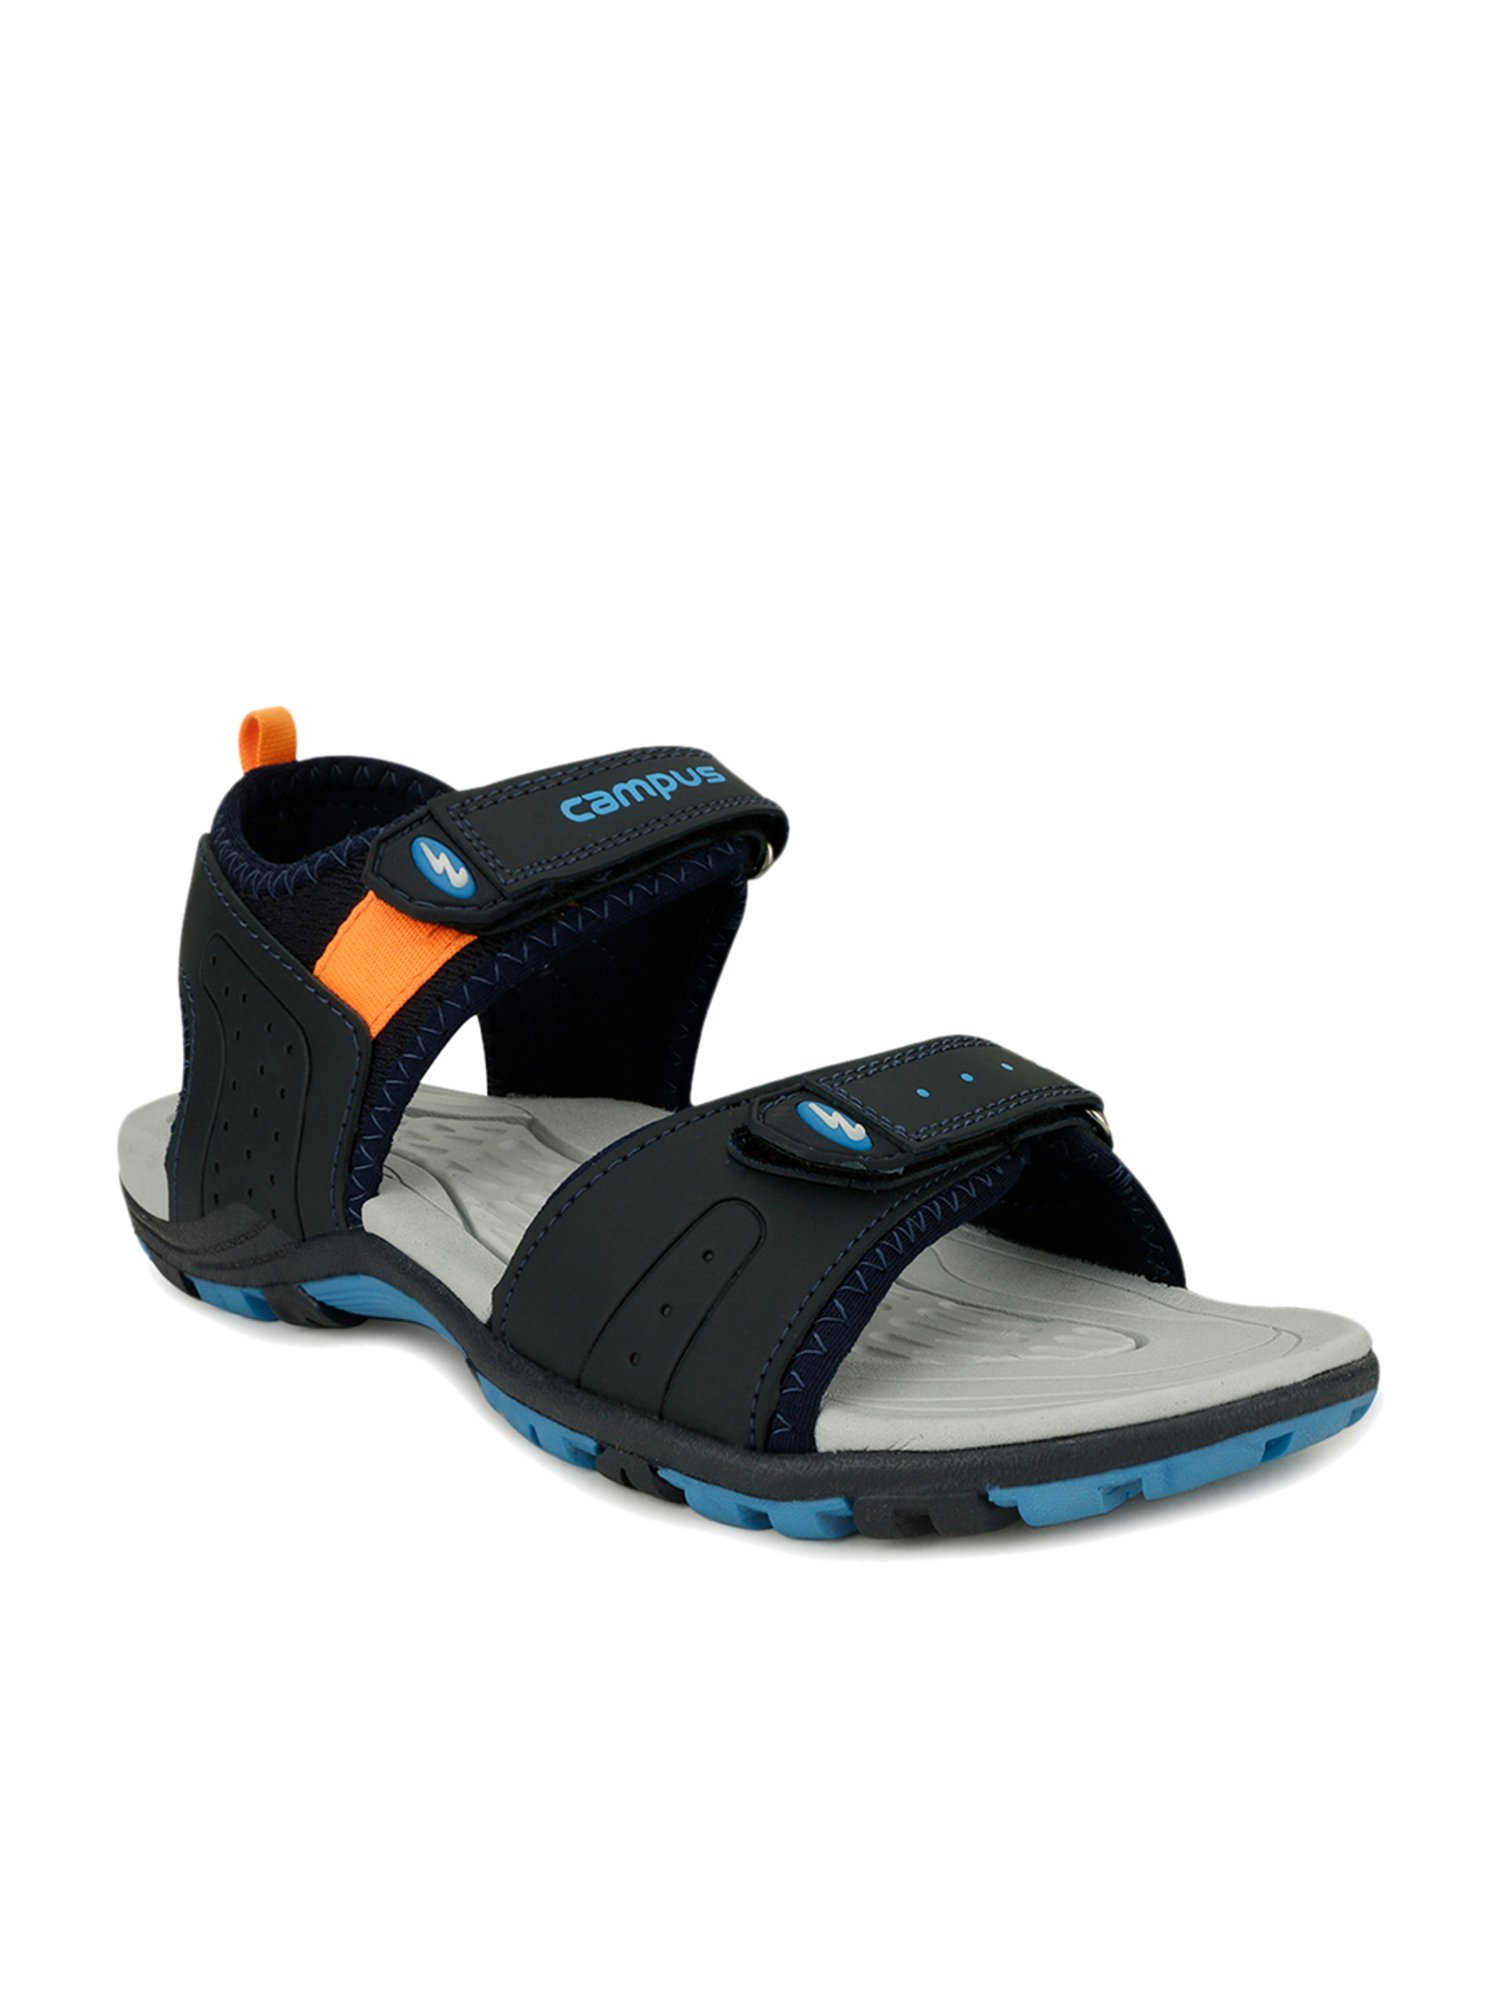 Buy Sandals For Men: Gc-22110-Blk-D-Gry | Campus Shoes